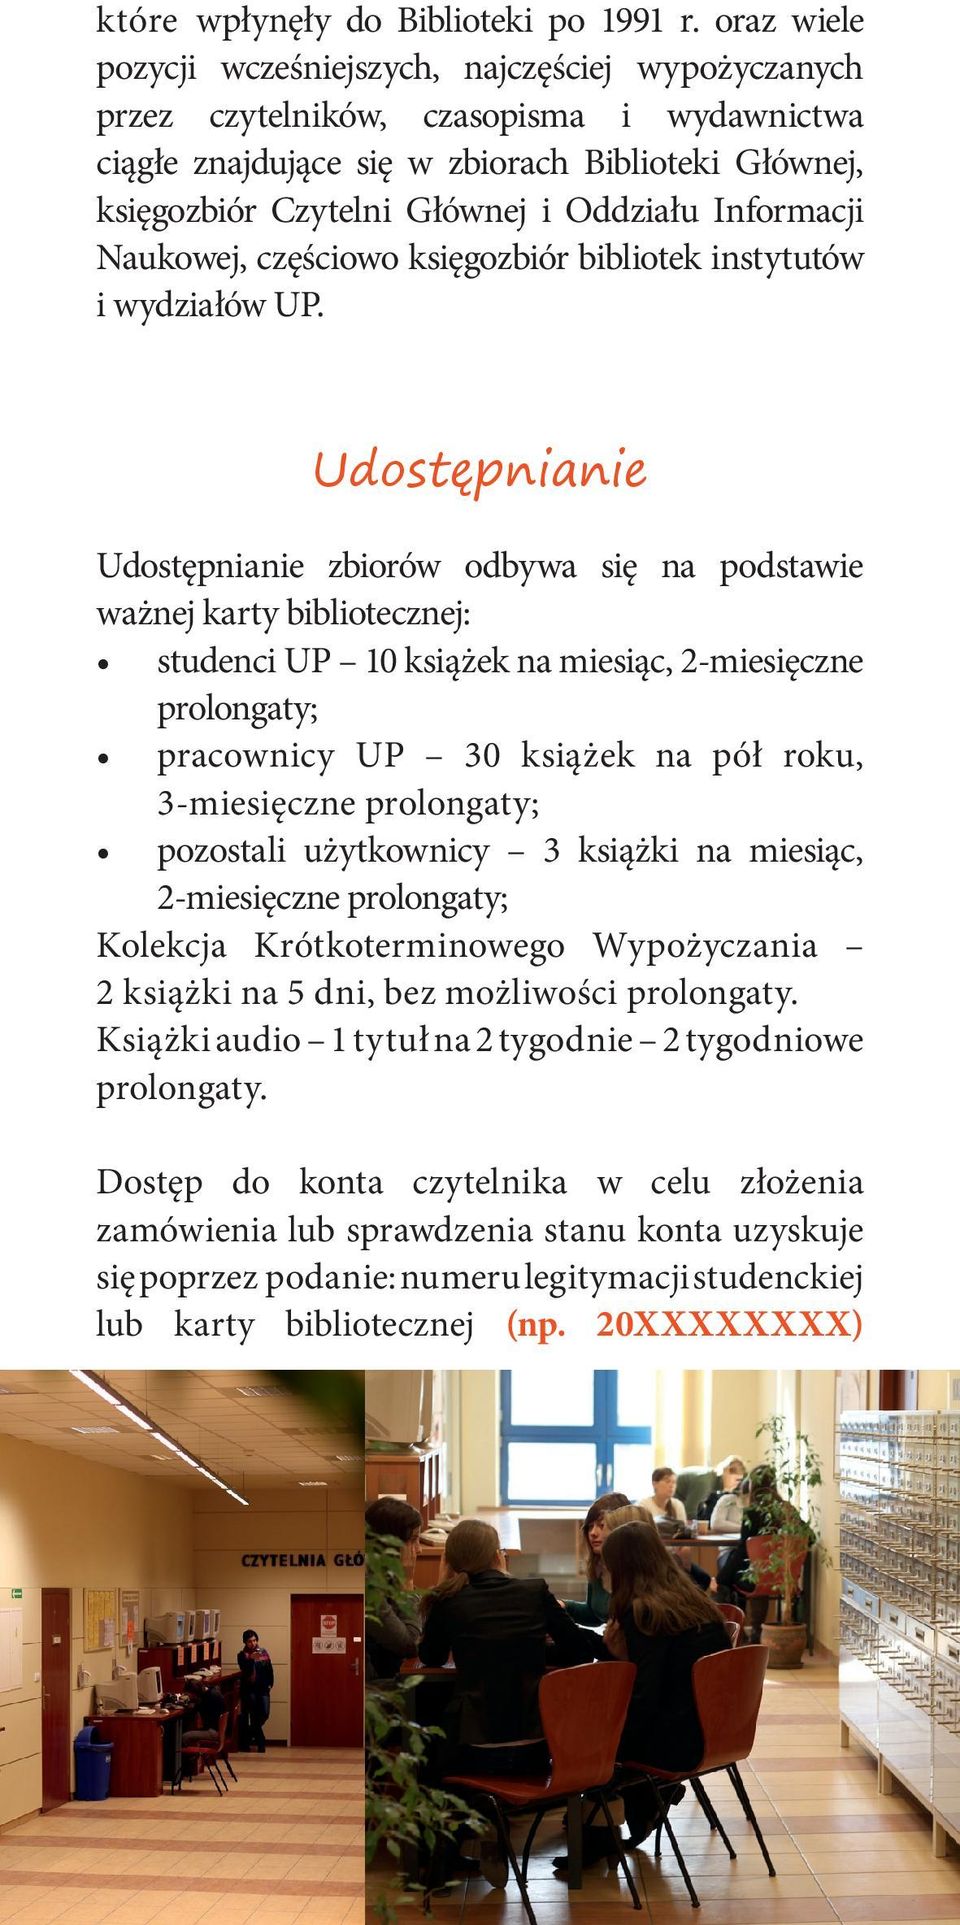 Informacji Naukowej, częściowo księgozbiór bibliotek instytutów i wydziałów UP.